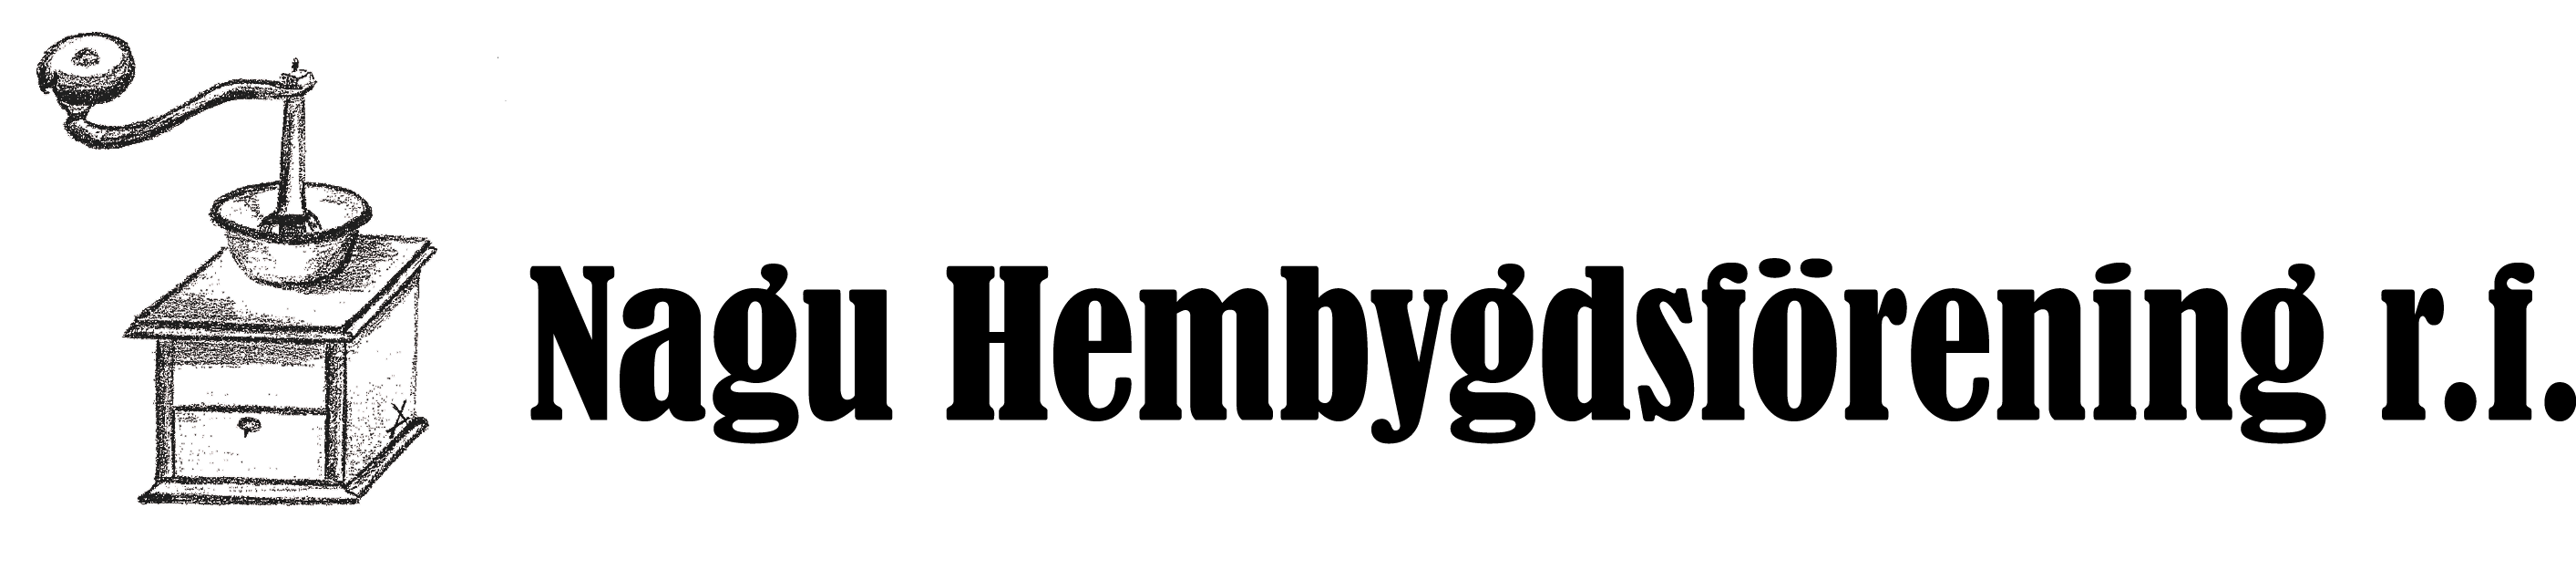 Nagu hembygdsförening logo svart